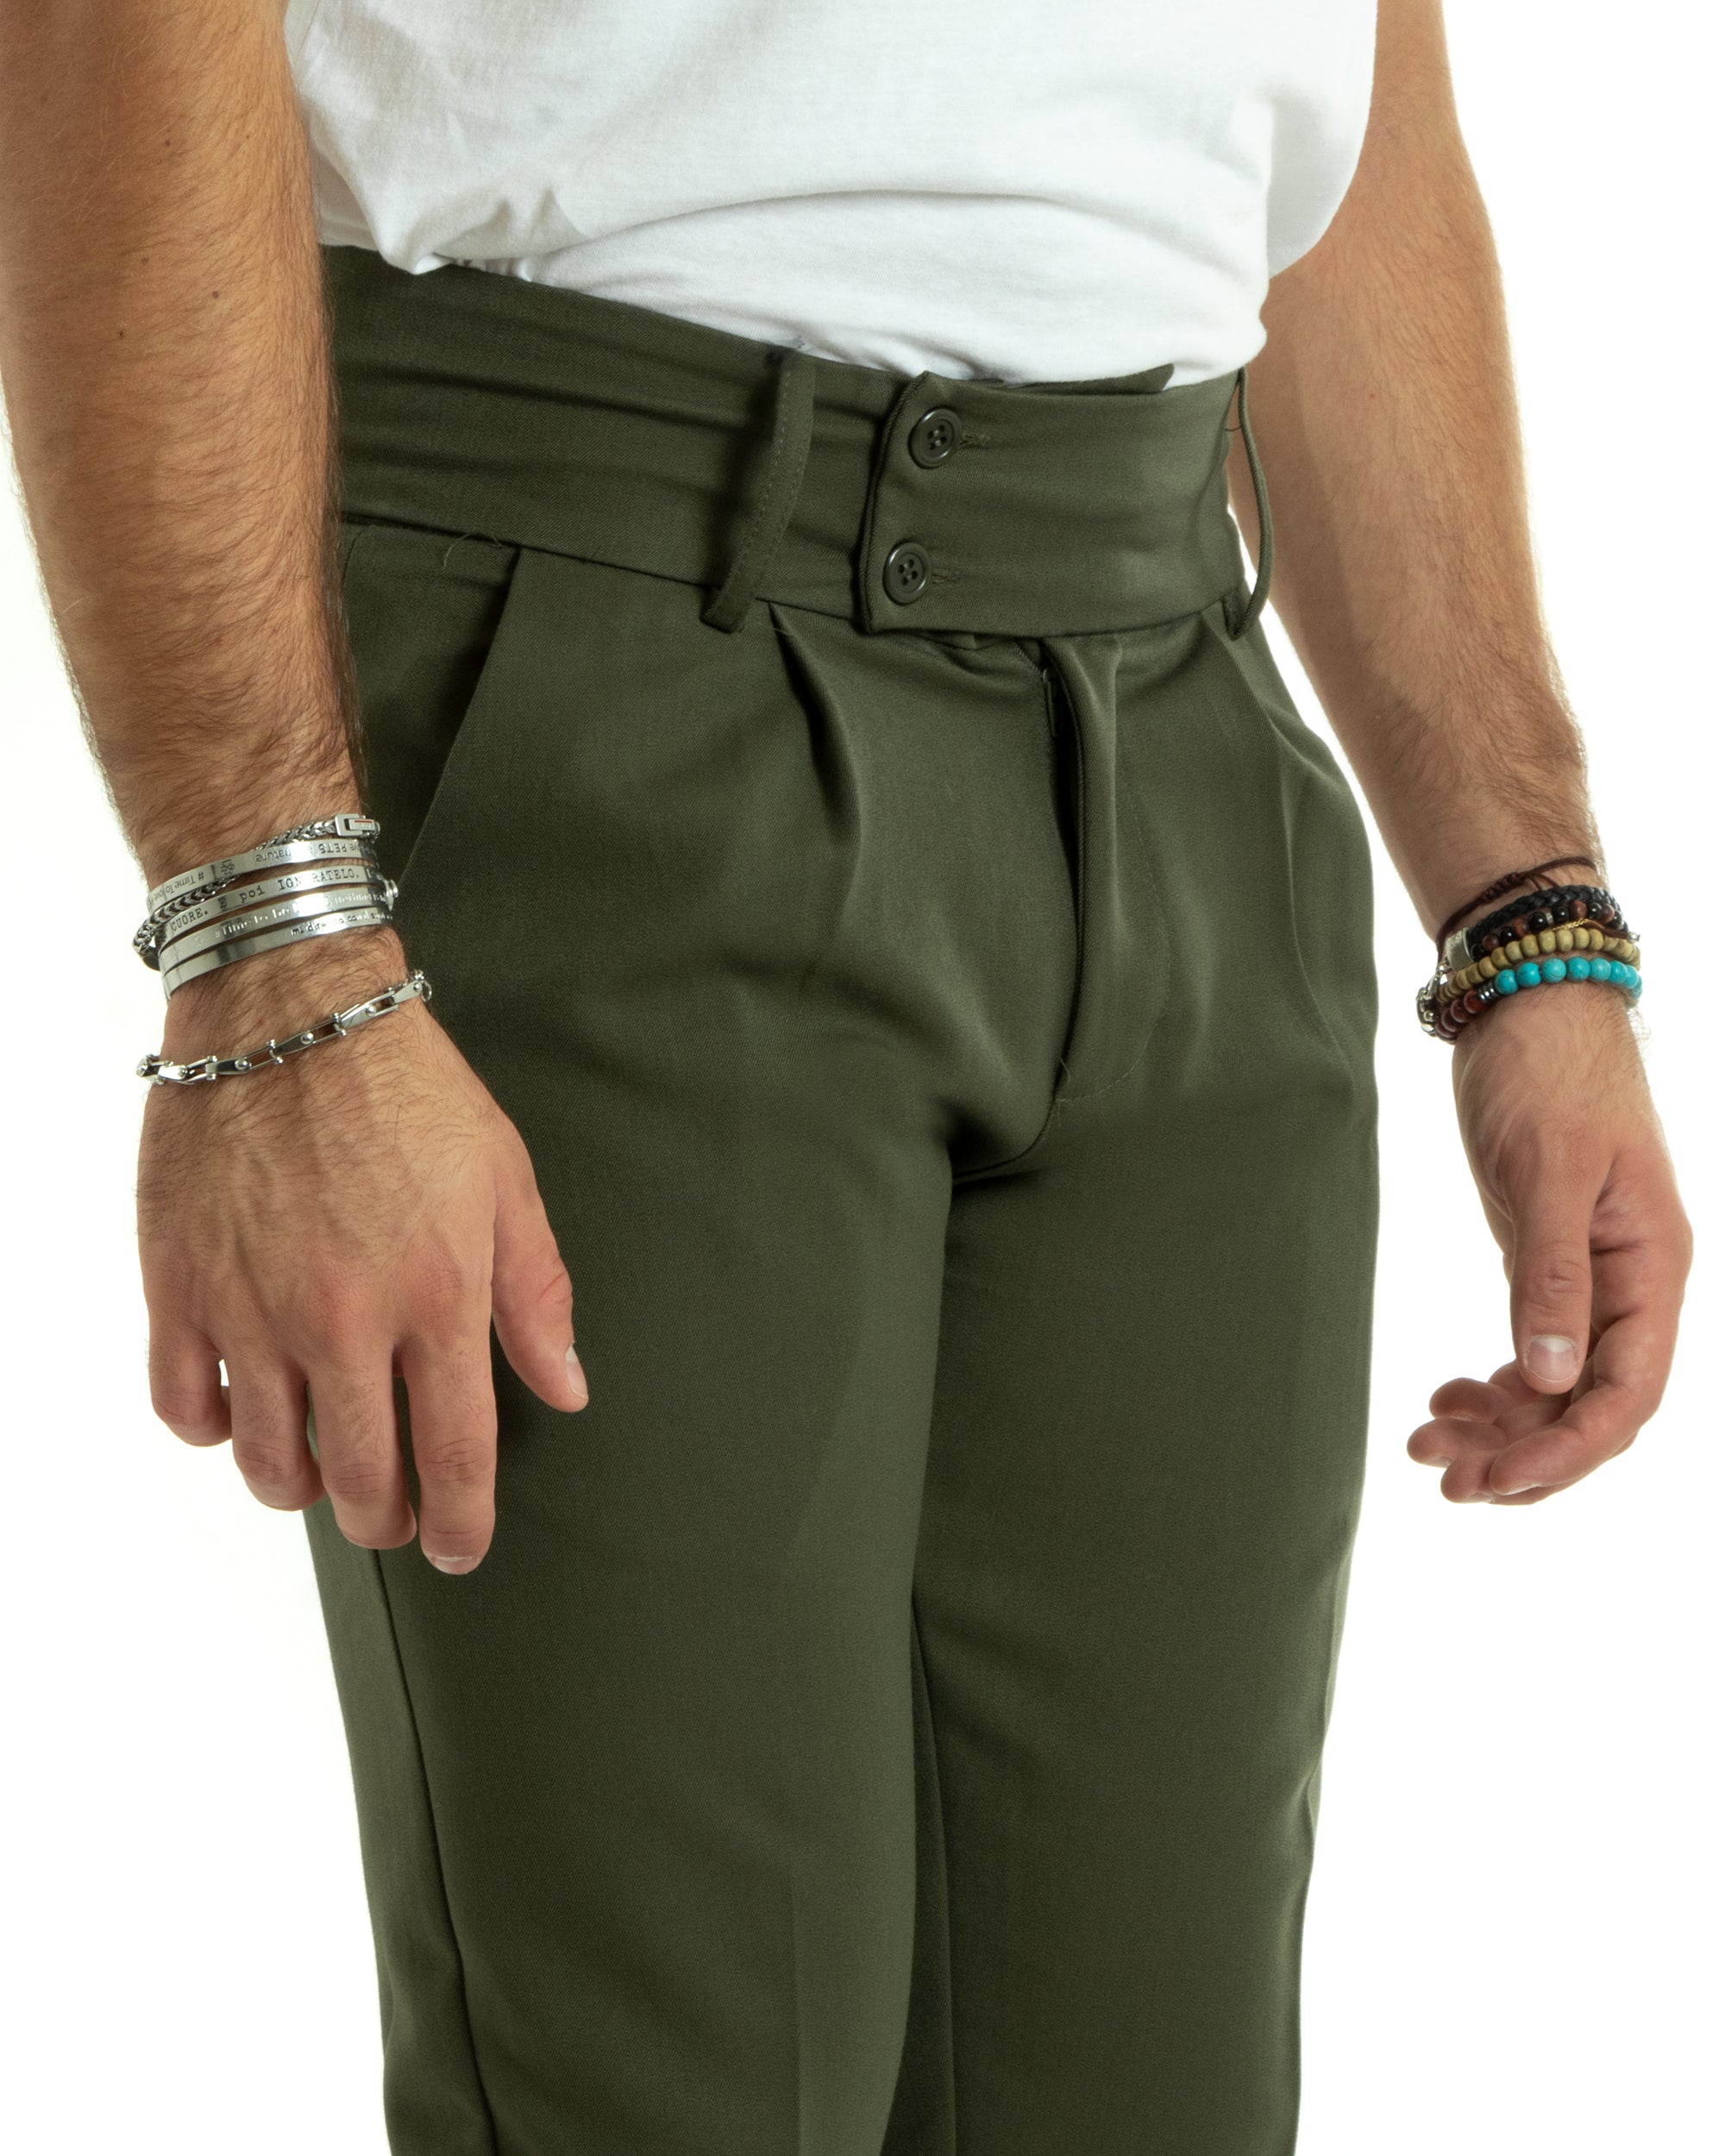 Pantaloni Uomo Viscosa Tasca America Vita Alta Classico Pinces Abbottonatura Allungata Casual Verde Militare GIOSAL-P5986A